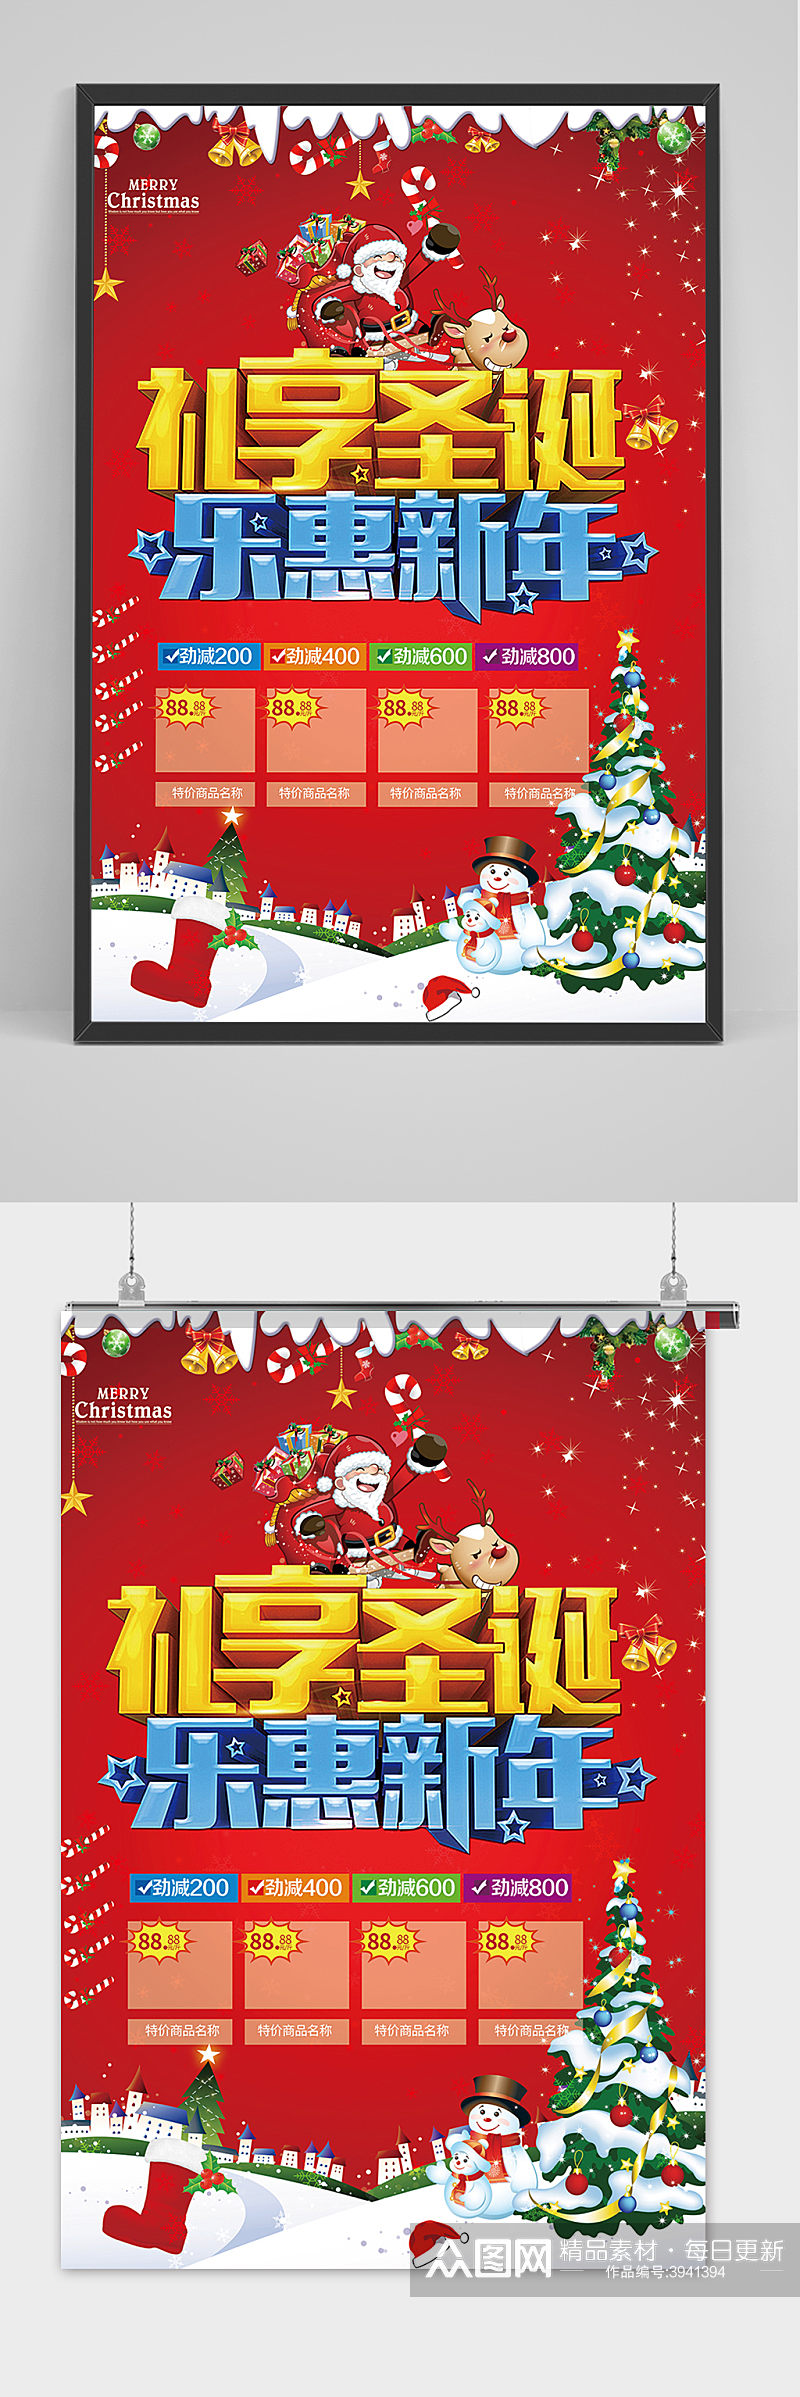 红色喜庆礼享圣诞节商场购物促销海报素材